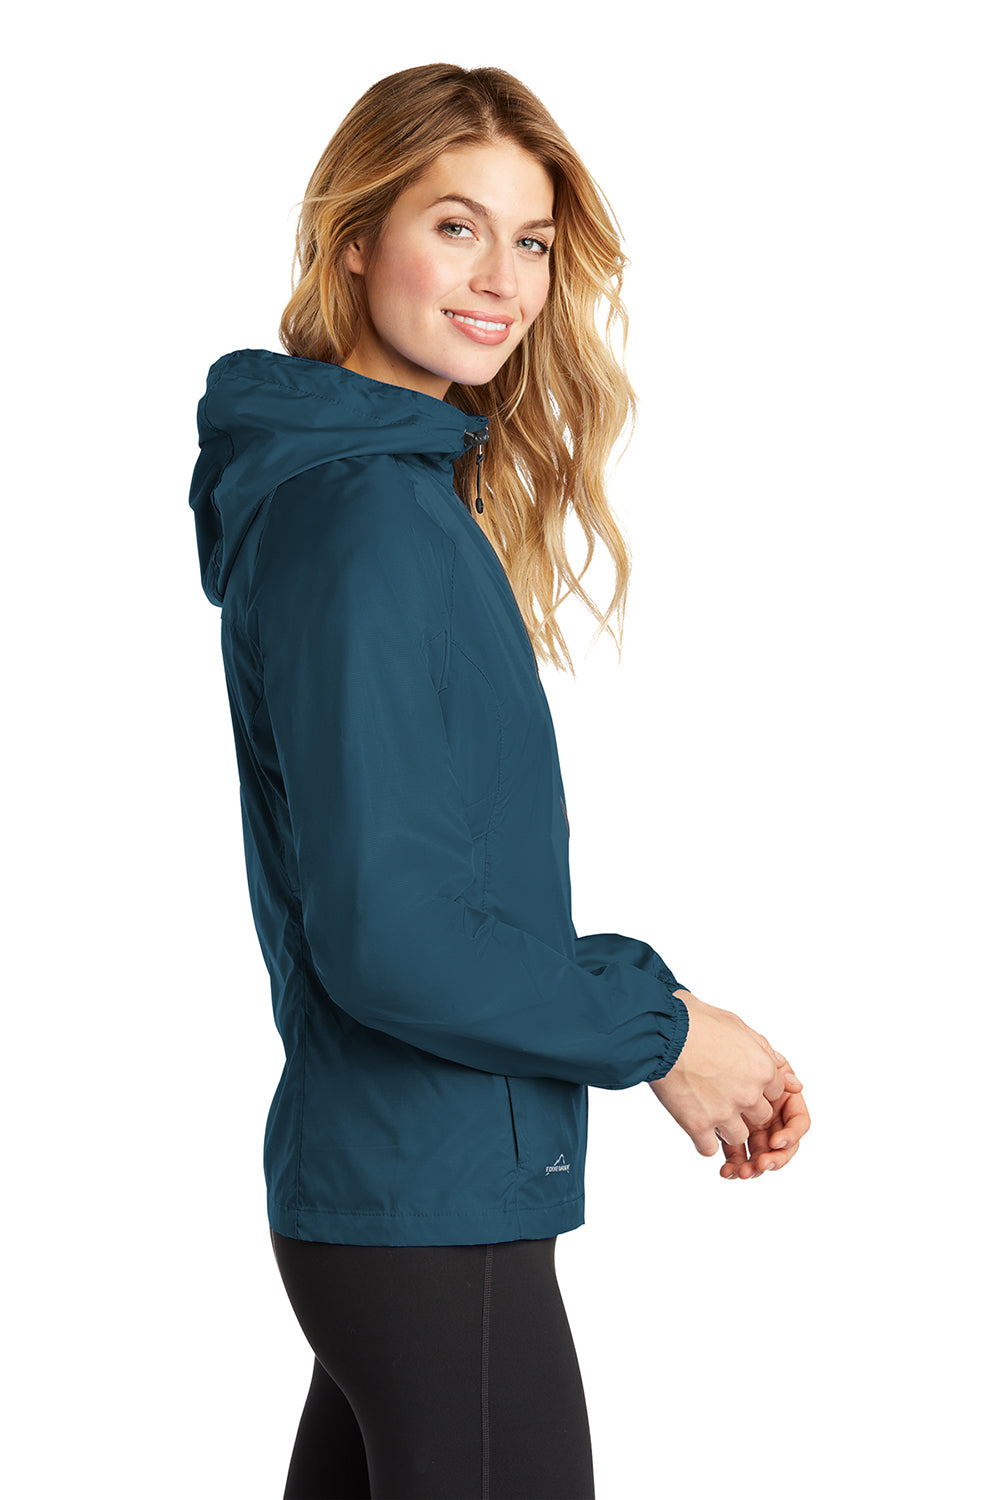 Eddie Bauer EB501 Womens Packable Wind Resistant Full Zip Hooded Jacket Adriatic Blue Model Side